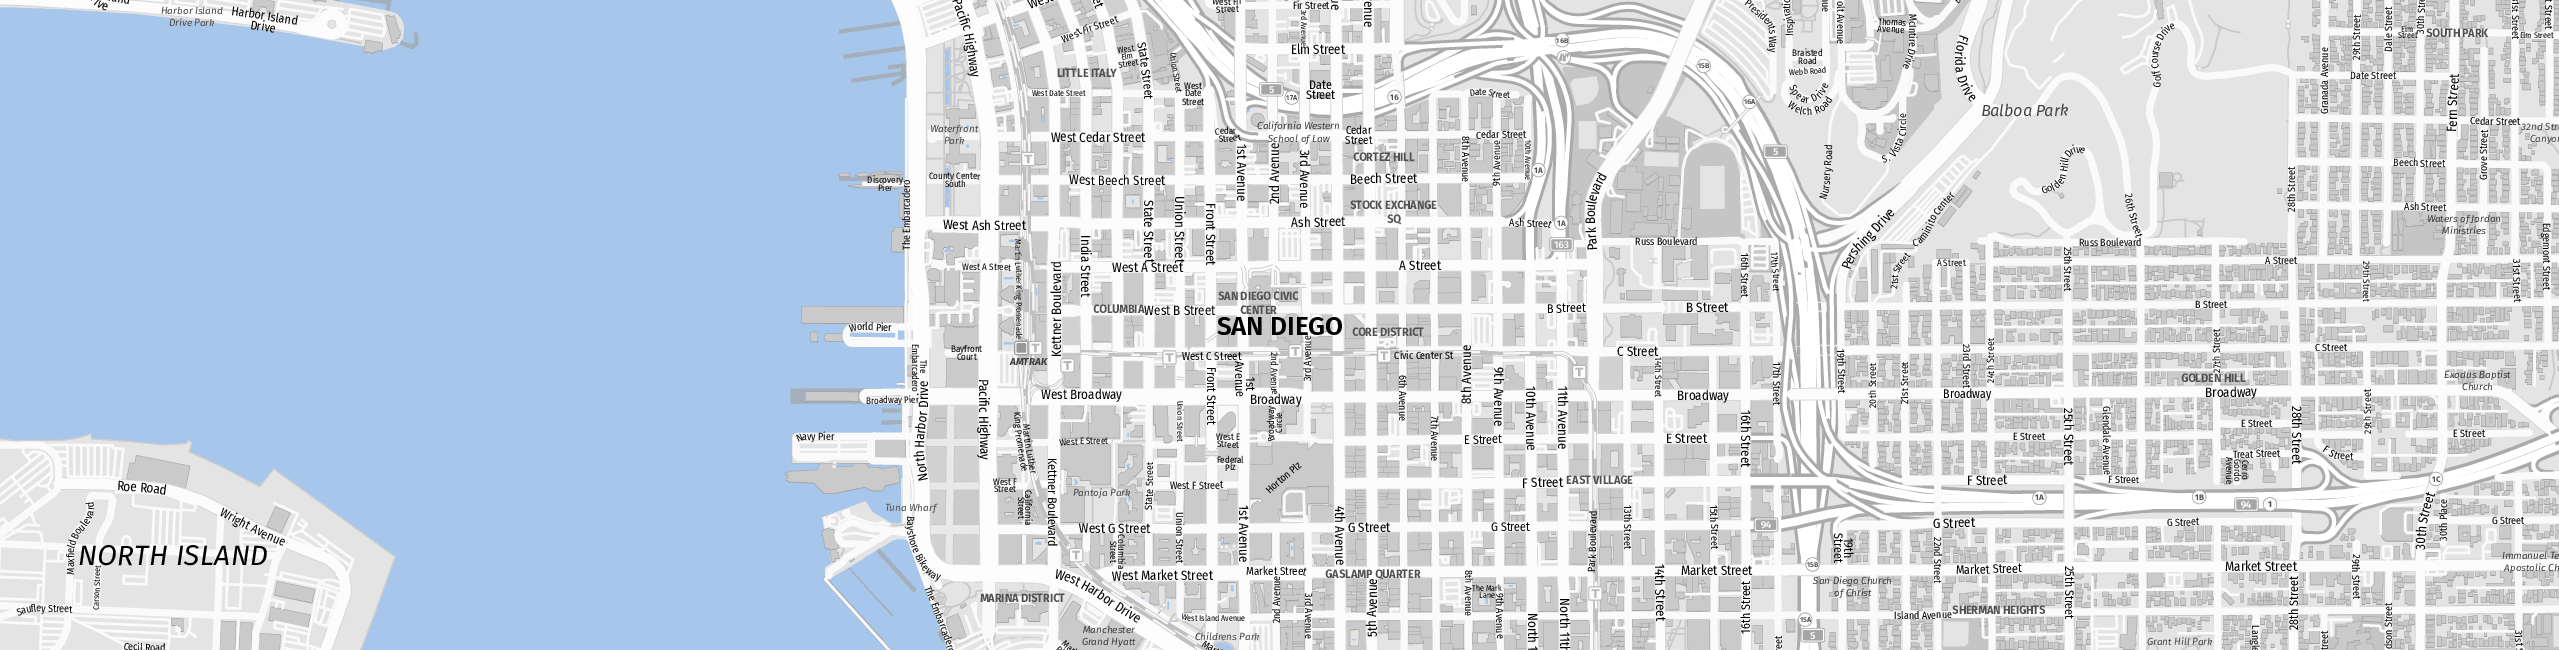 Stadtplan San Diego zum Downloaden.